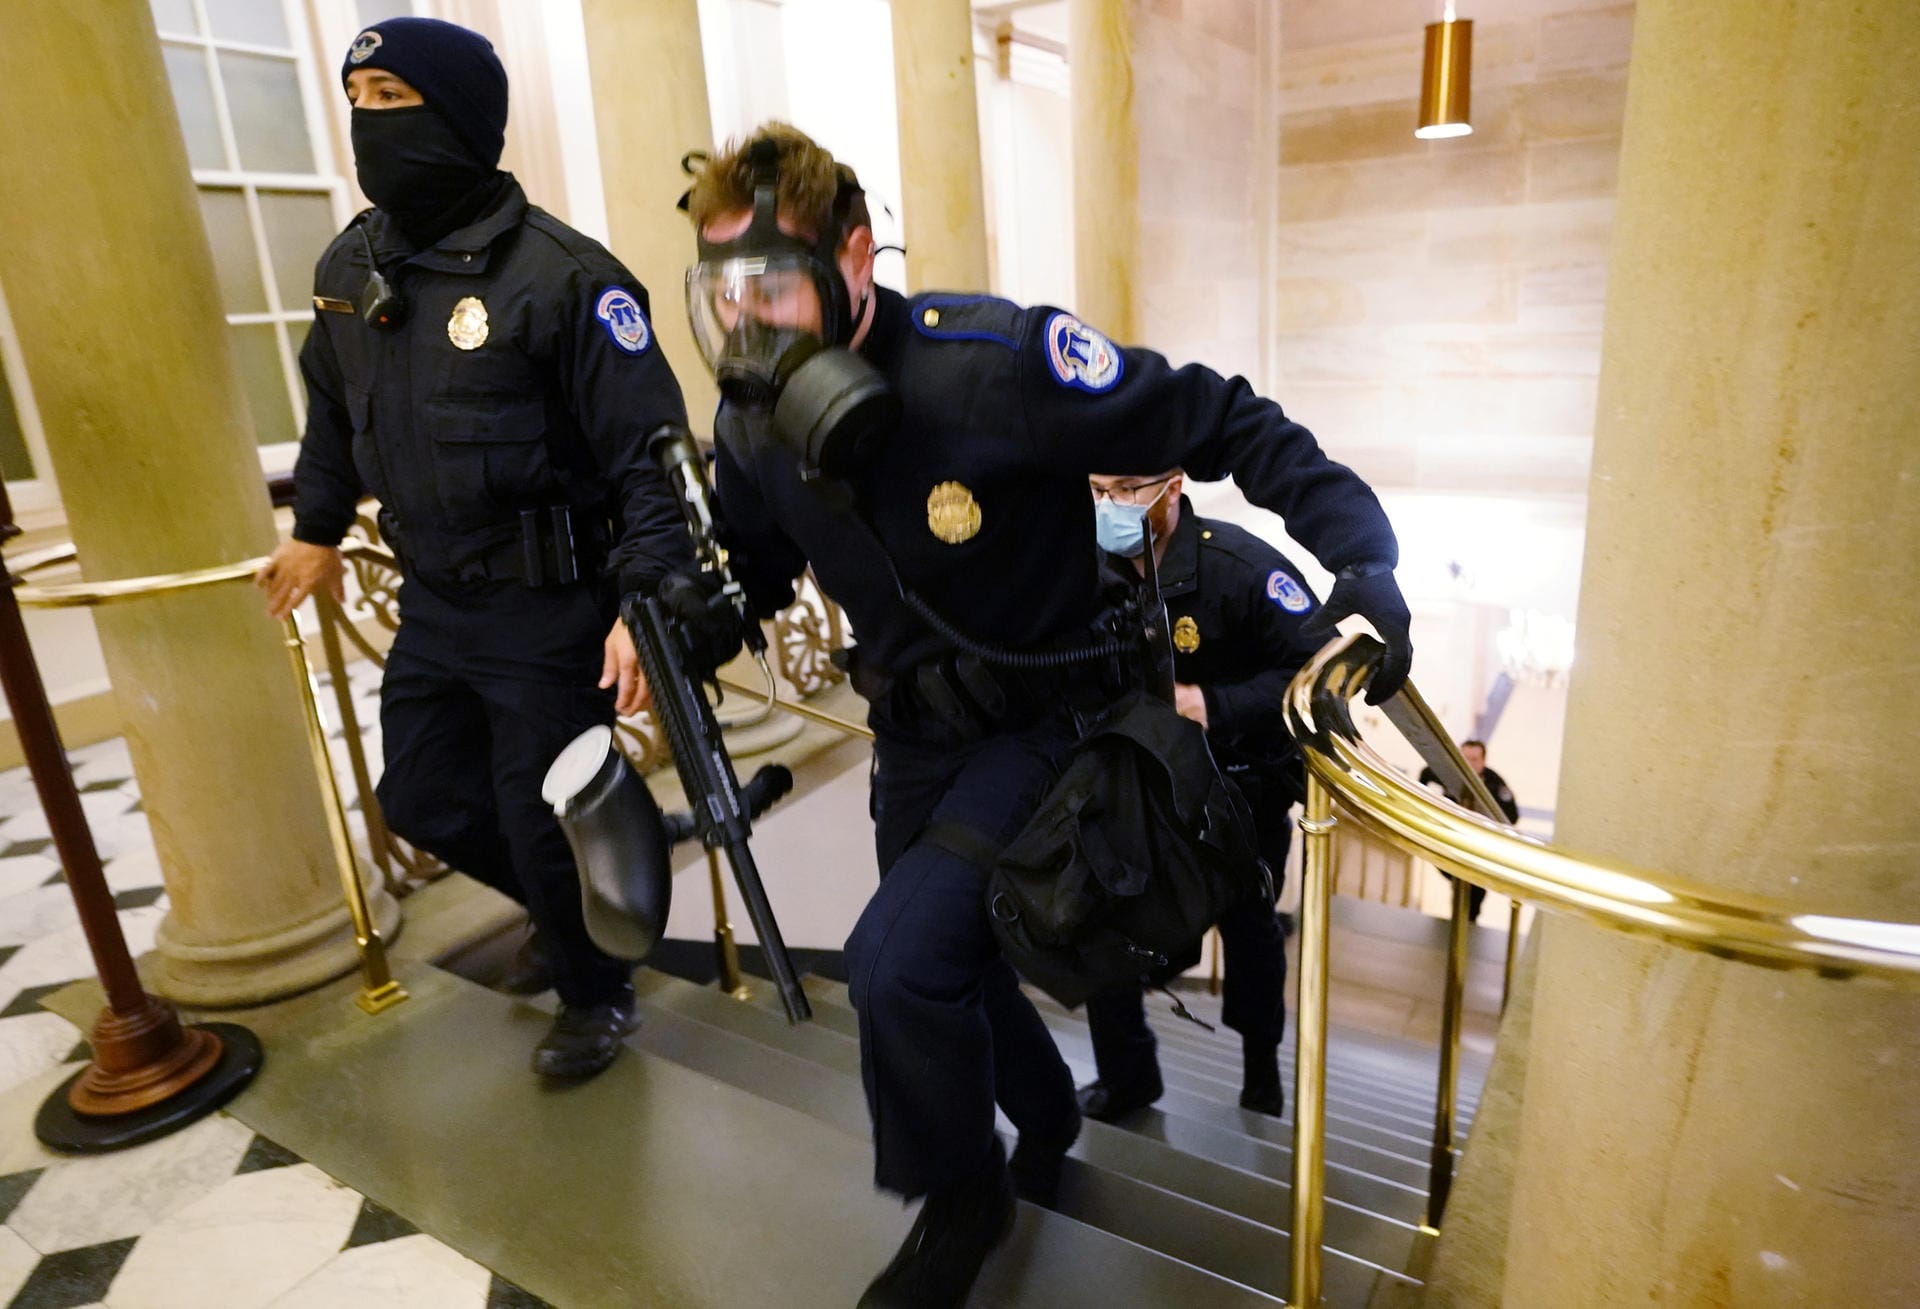 Polizisten eilen in Schutzmontur zur Unterstützung durch die Flure des Kapitols.